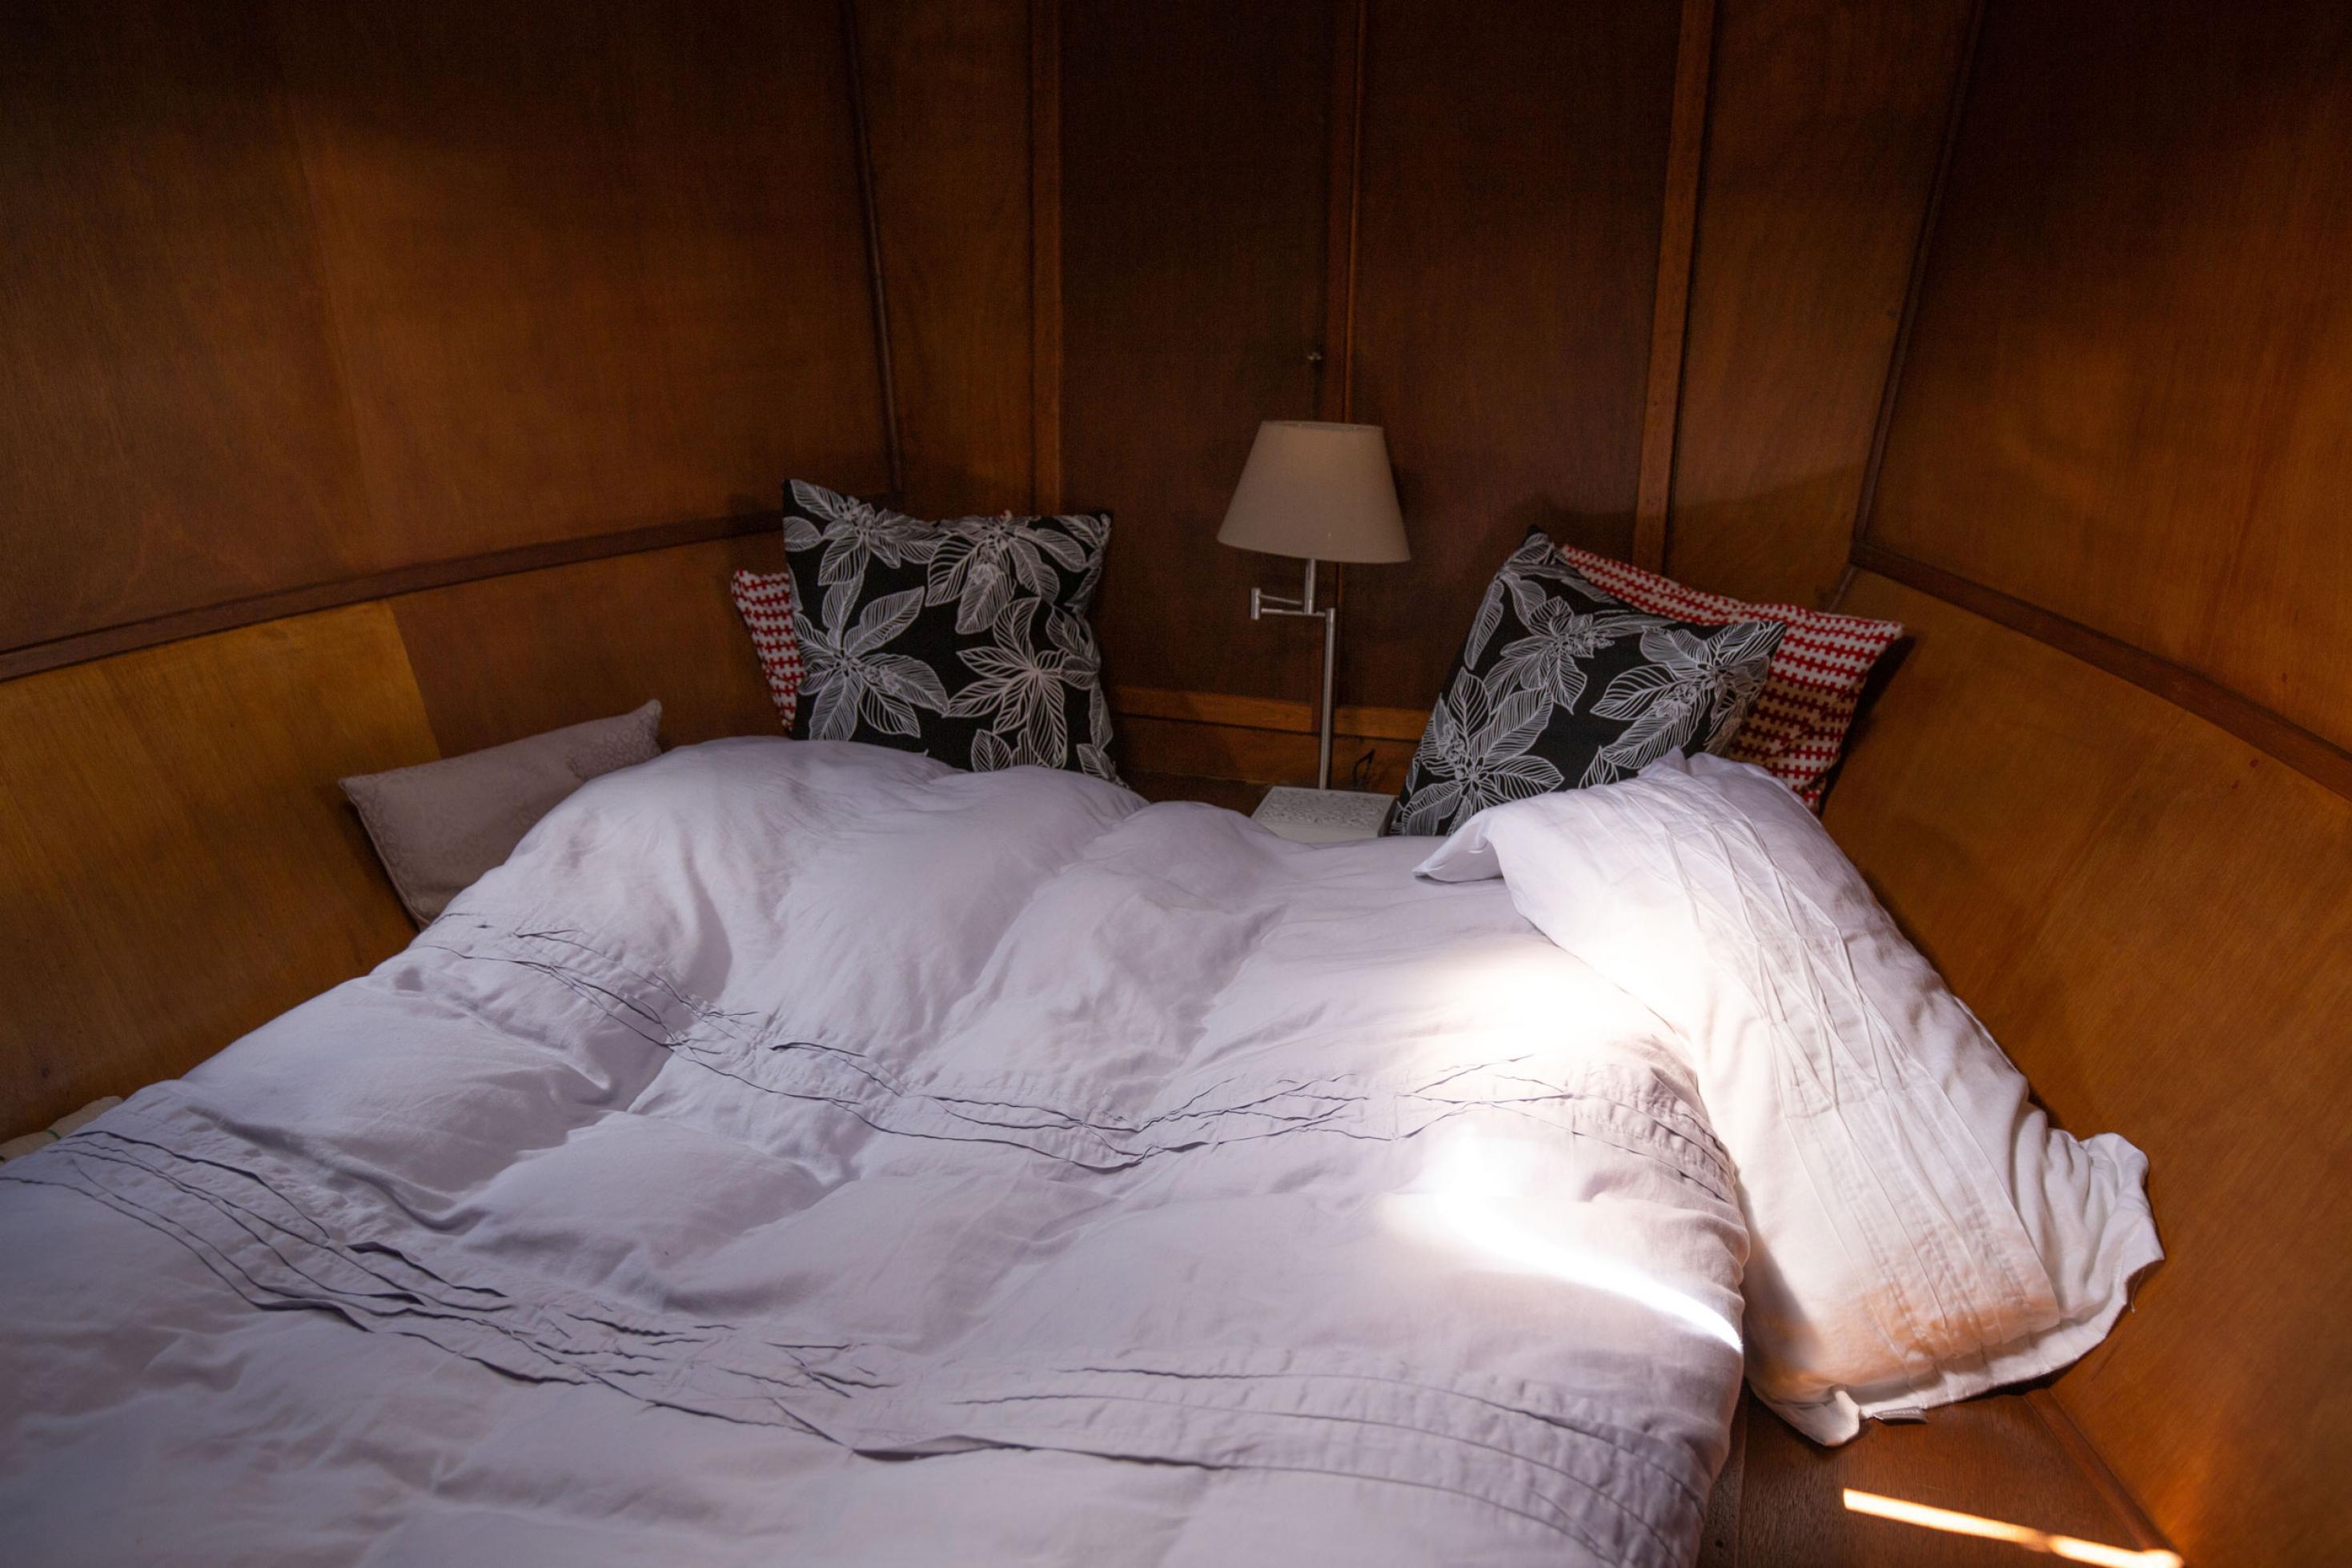 Doppelbett in der Kajüte des Schleppers von Miriam und Rainer